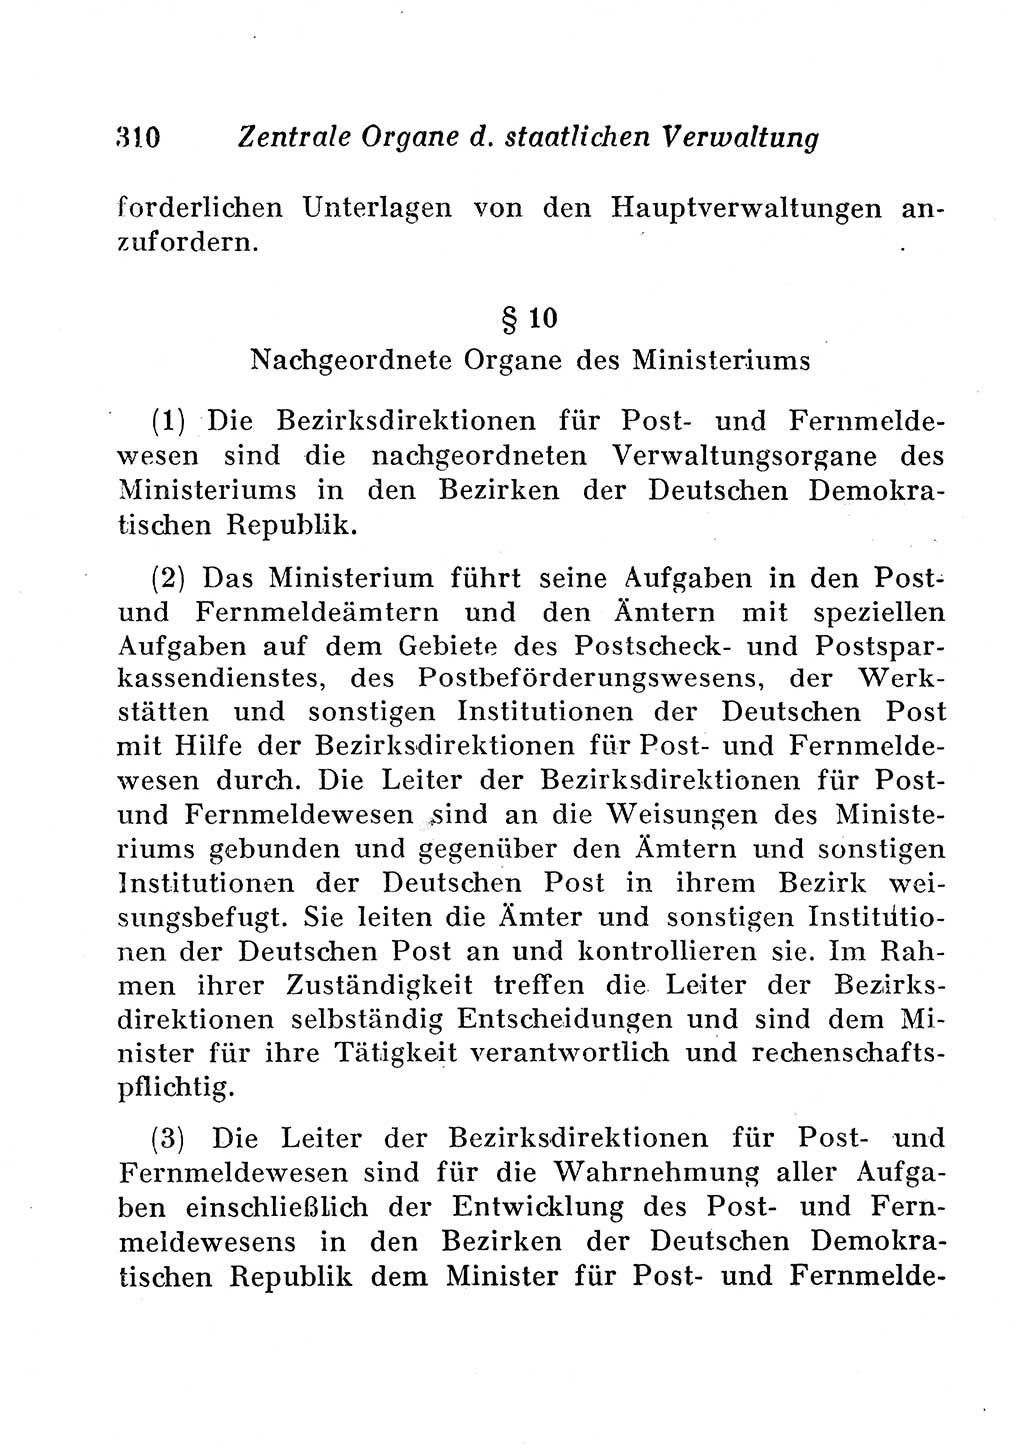 Staats- und verwaltungsrechtliche Gesetze der Deutschen Demokratischen Republik (DDR) 1958, Seite 310 (StVerwR Ges. DDR 1958, S. 310)